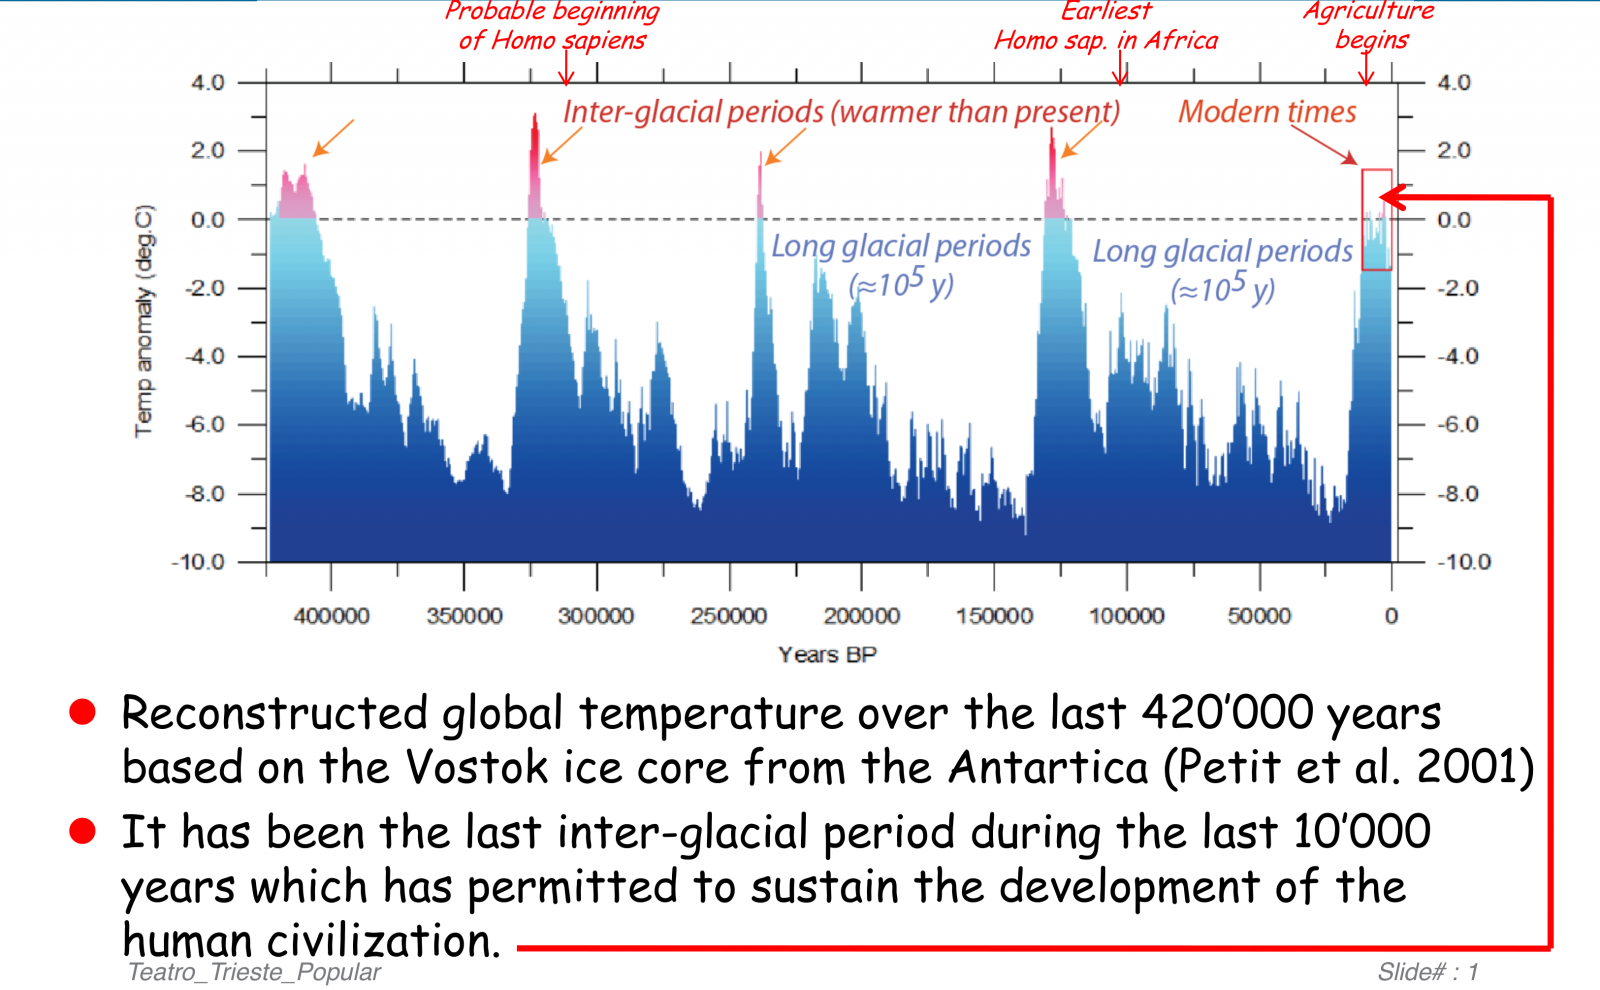 Cambiamento climatico - Temperatura media terrestre negli ultimi 420000 anni